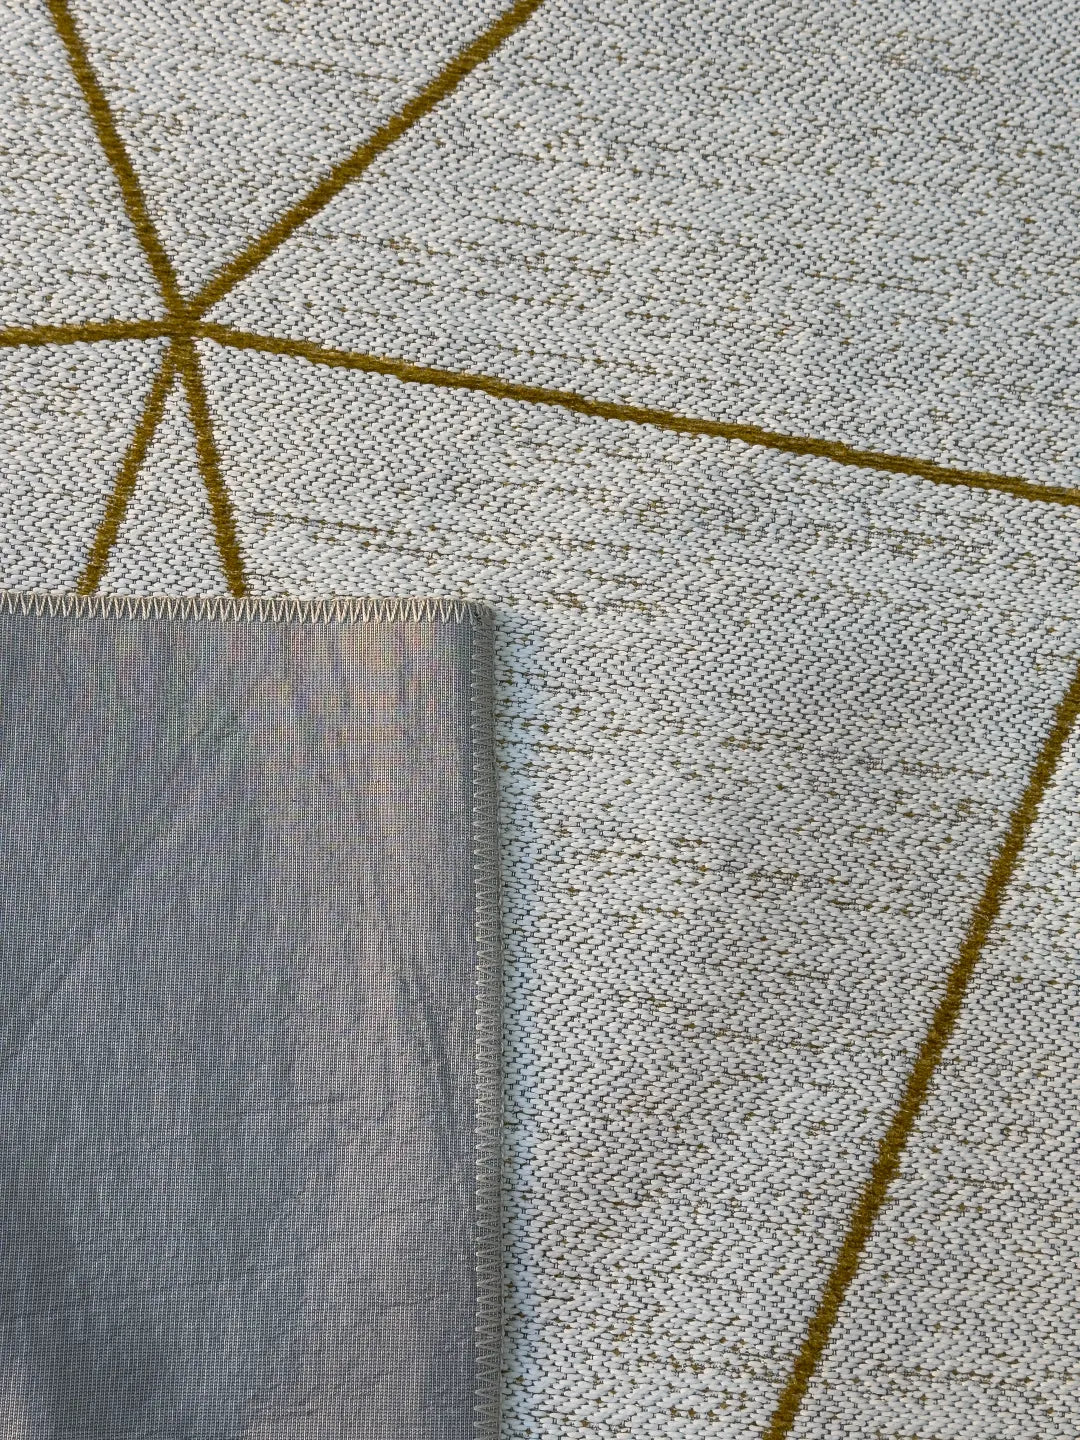 Anti Slip Carpet, AS6 -  Cream & Gold